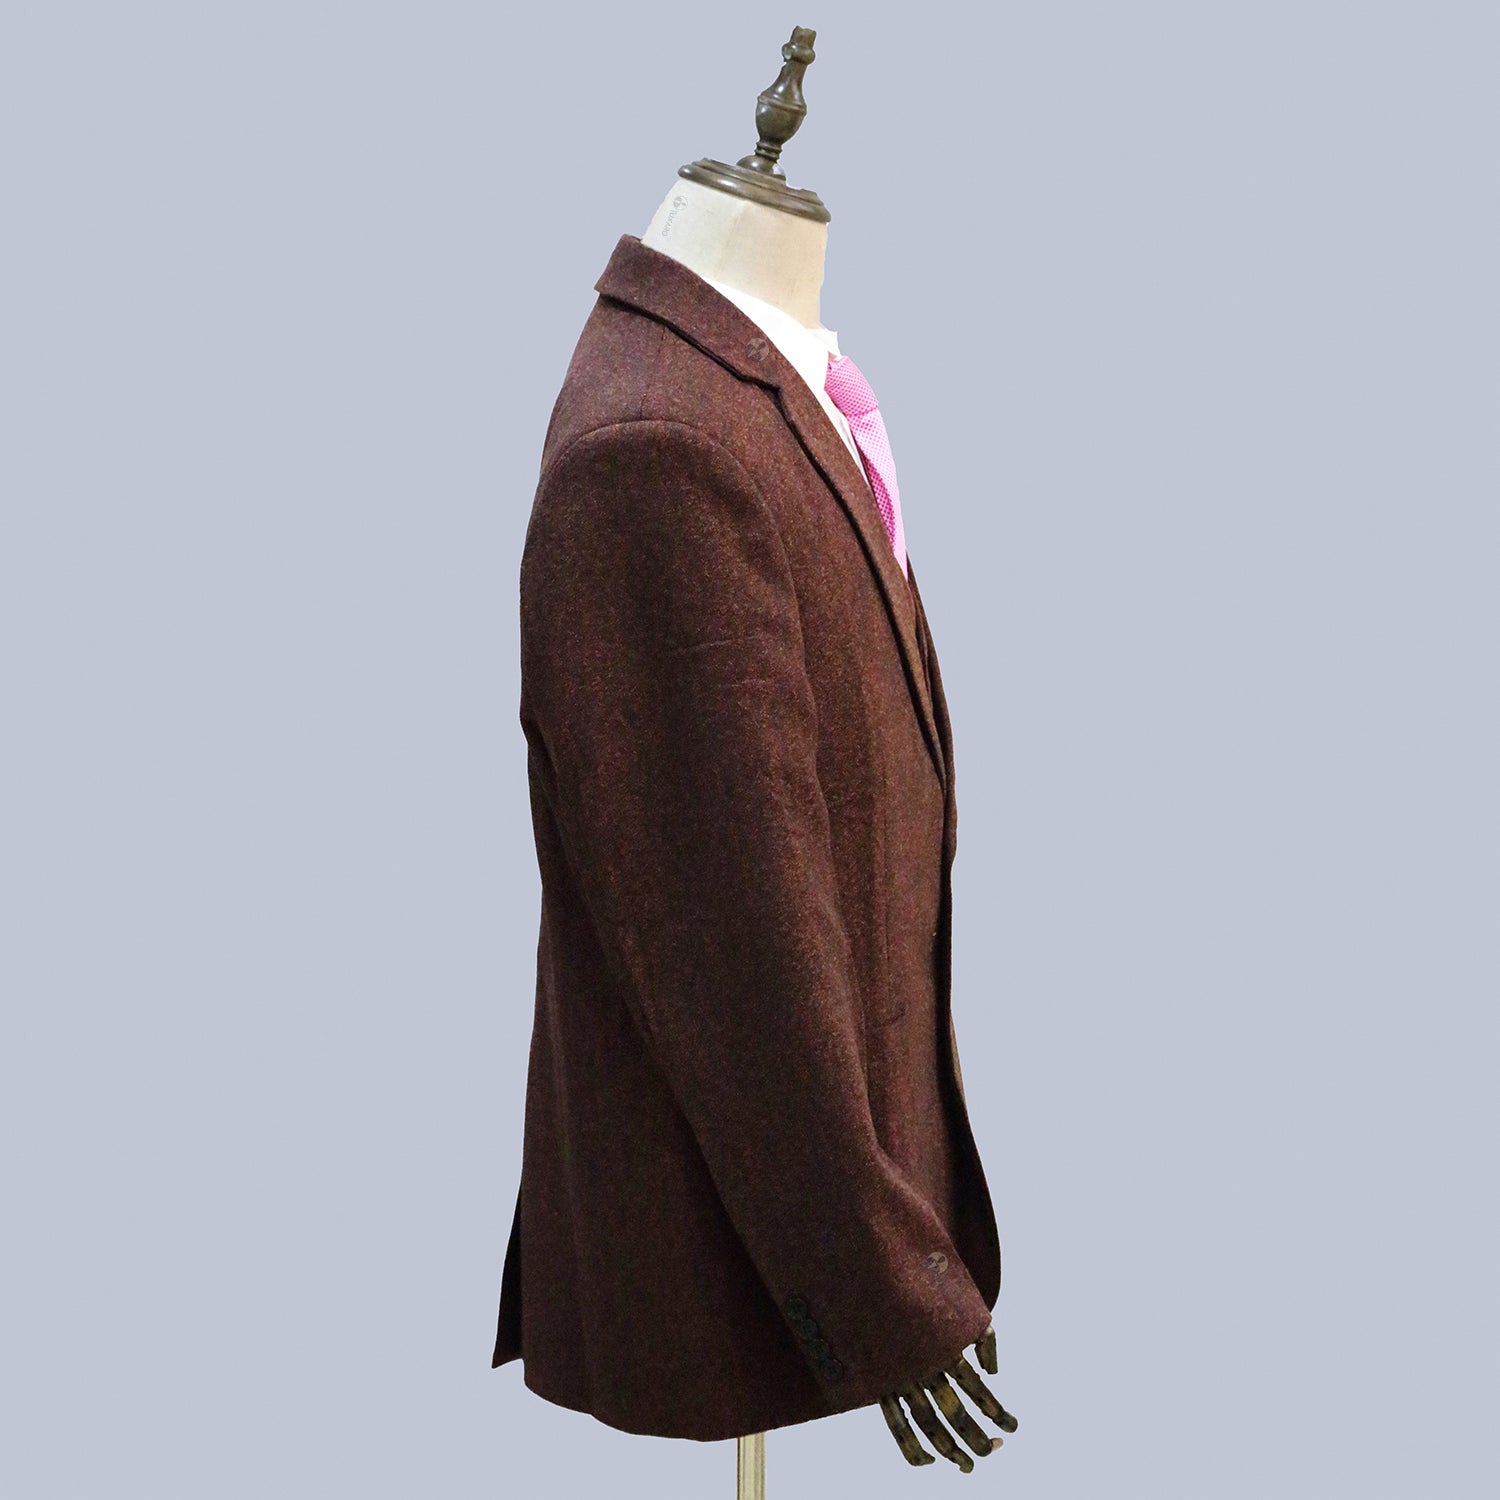 3 Piece Burgundy Herringbone Tweed Notch Lapel Suit